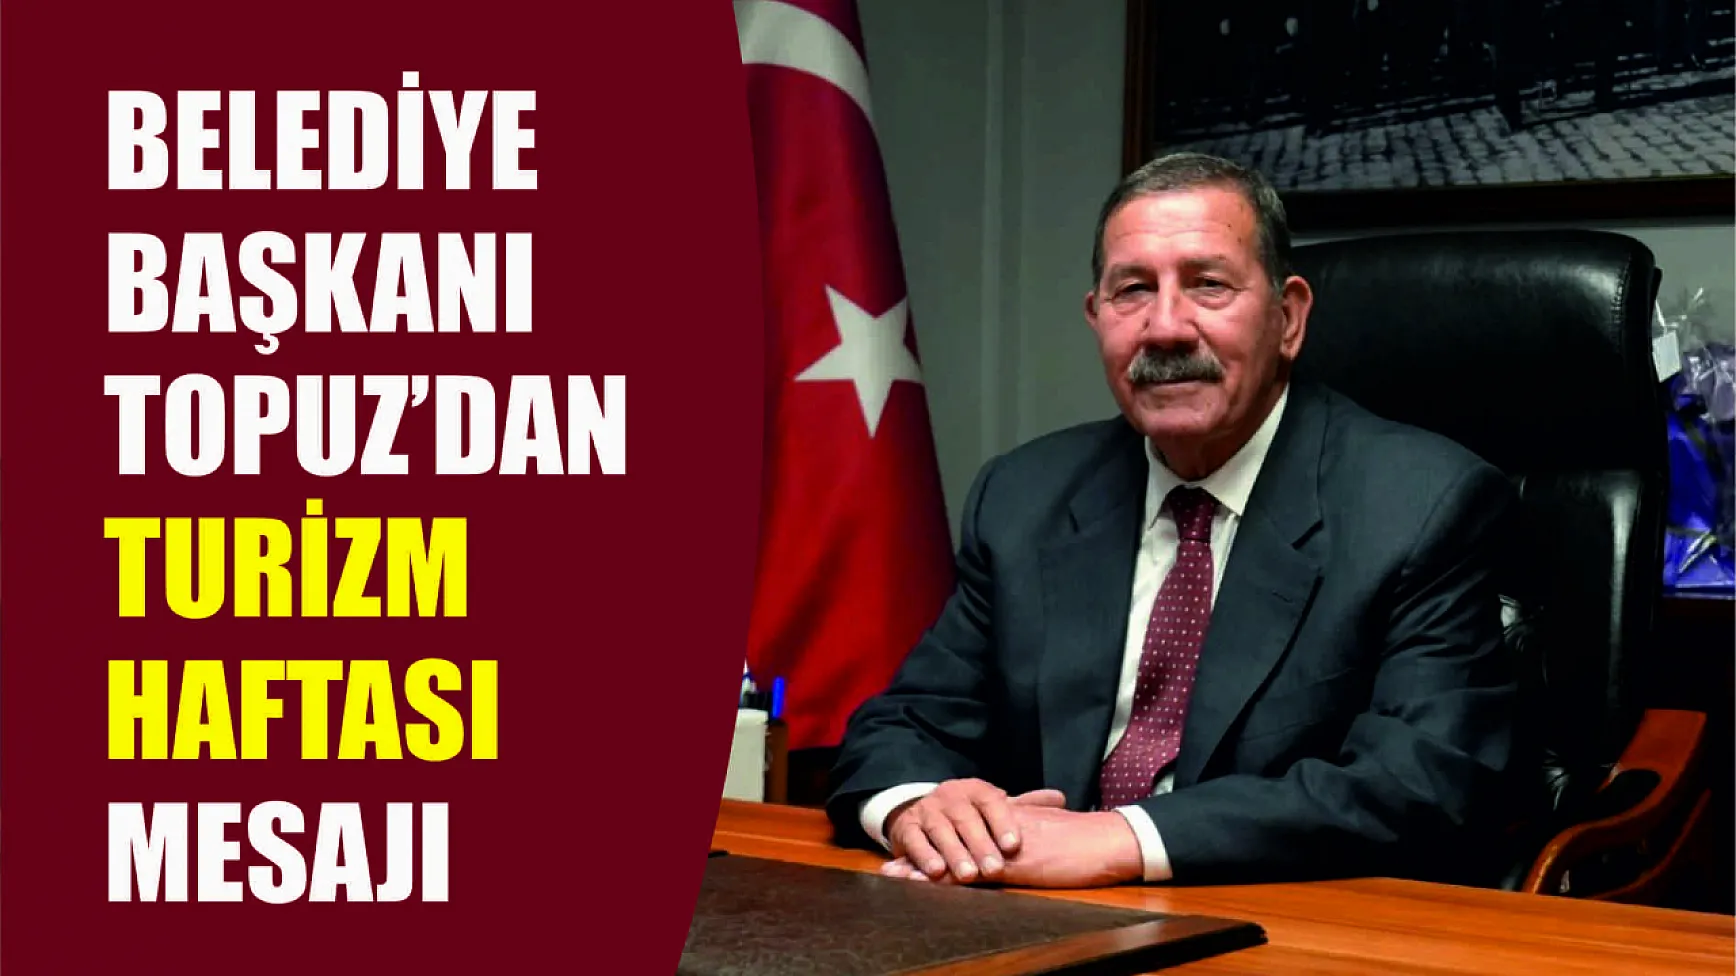 Milas Belediye Başkanı Fevzi Topuz’dan Turizm Haftası Mesajı